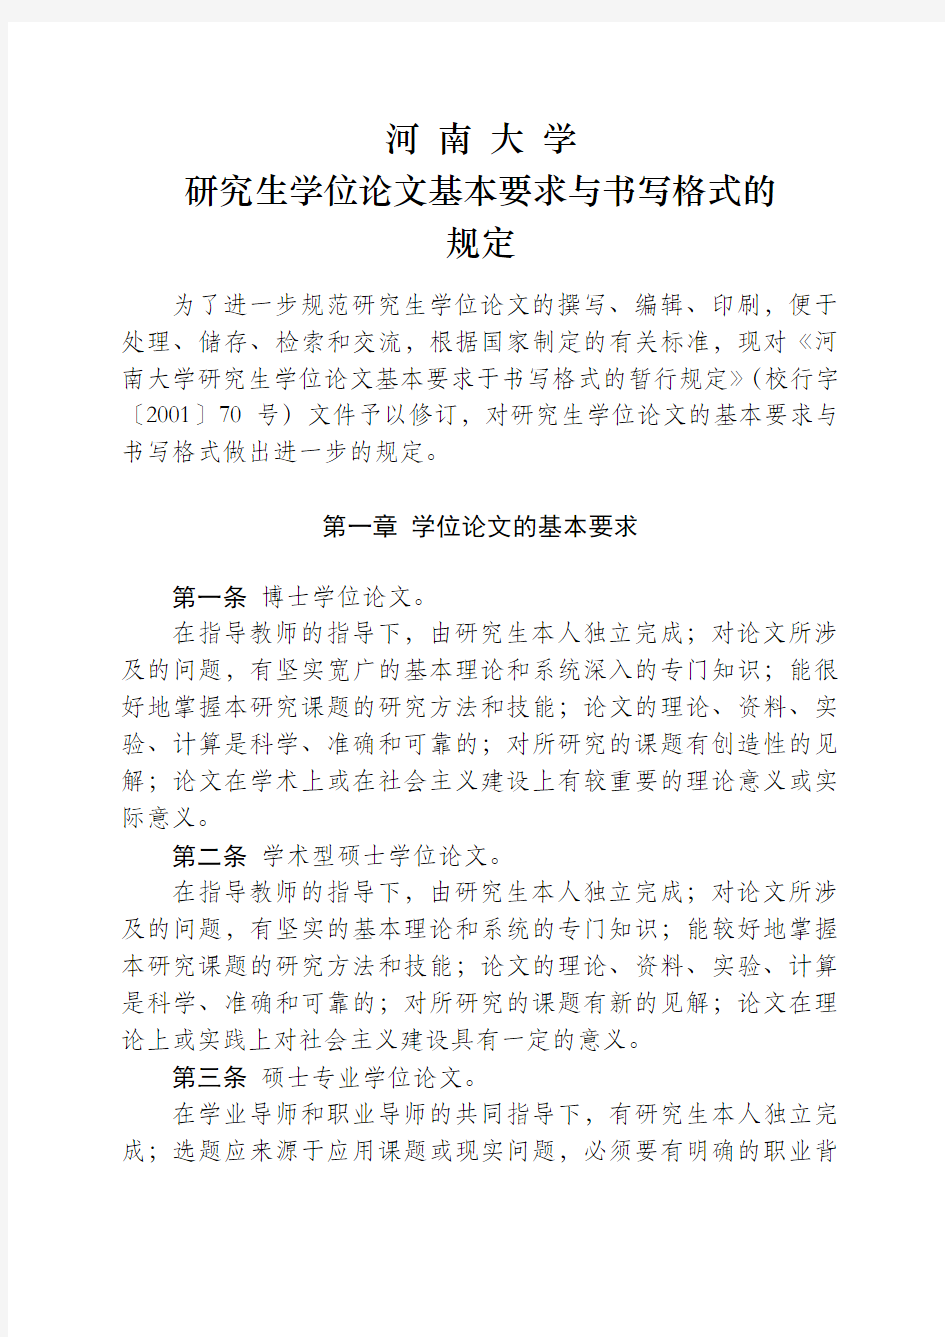 河南大学研究生学位论文基本要求与书写格式的规定